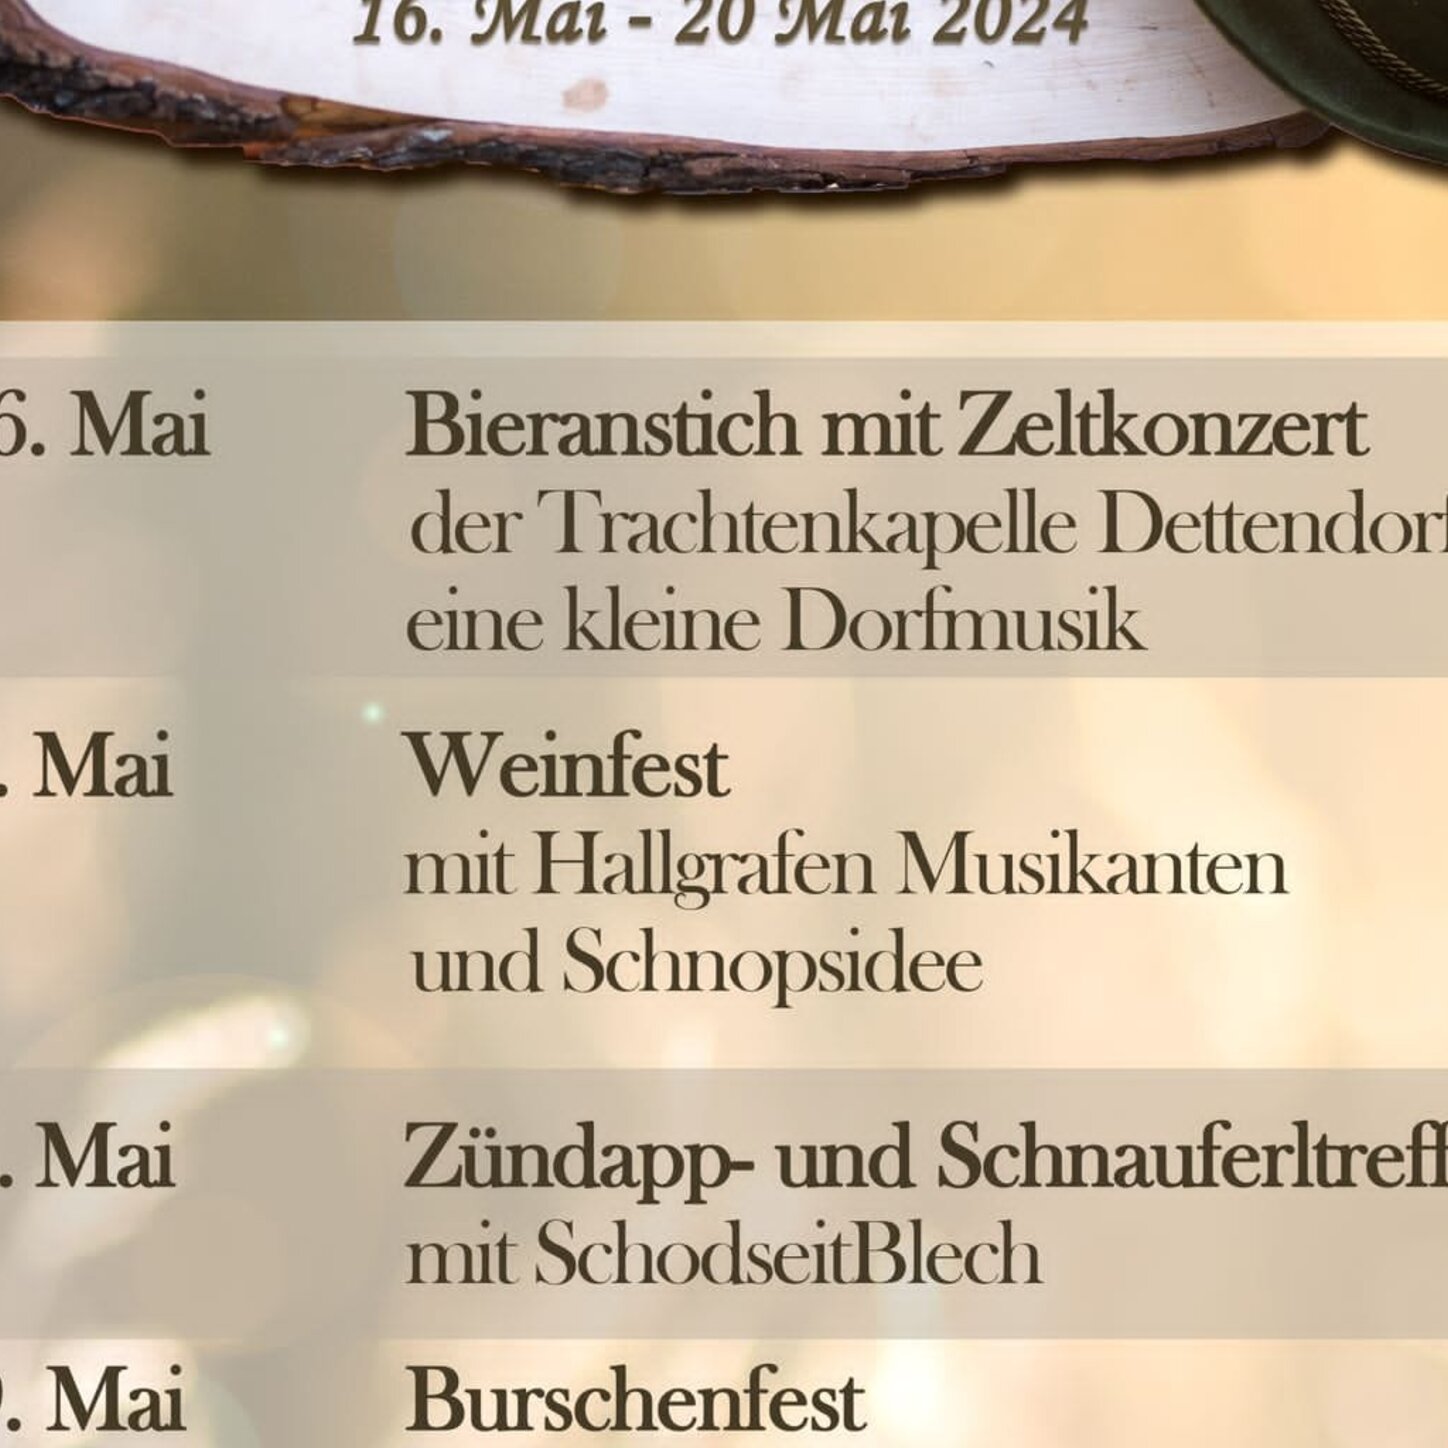 22 Jahre Dirndl- und Burschenverein Dettendorf - Bieranstich